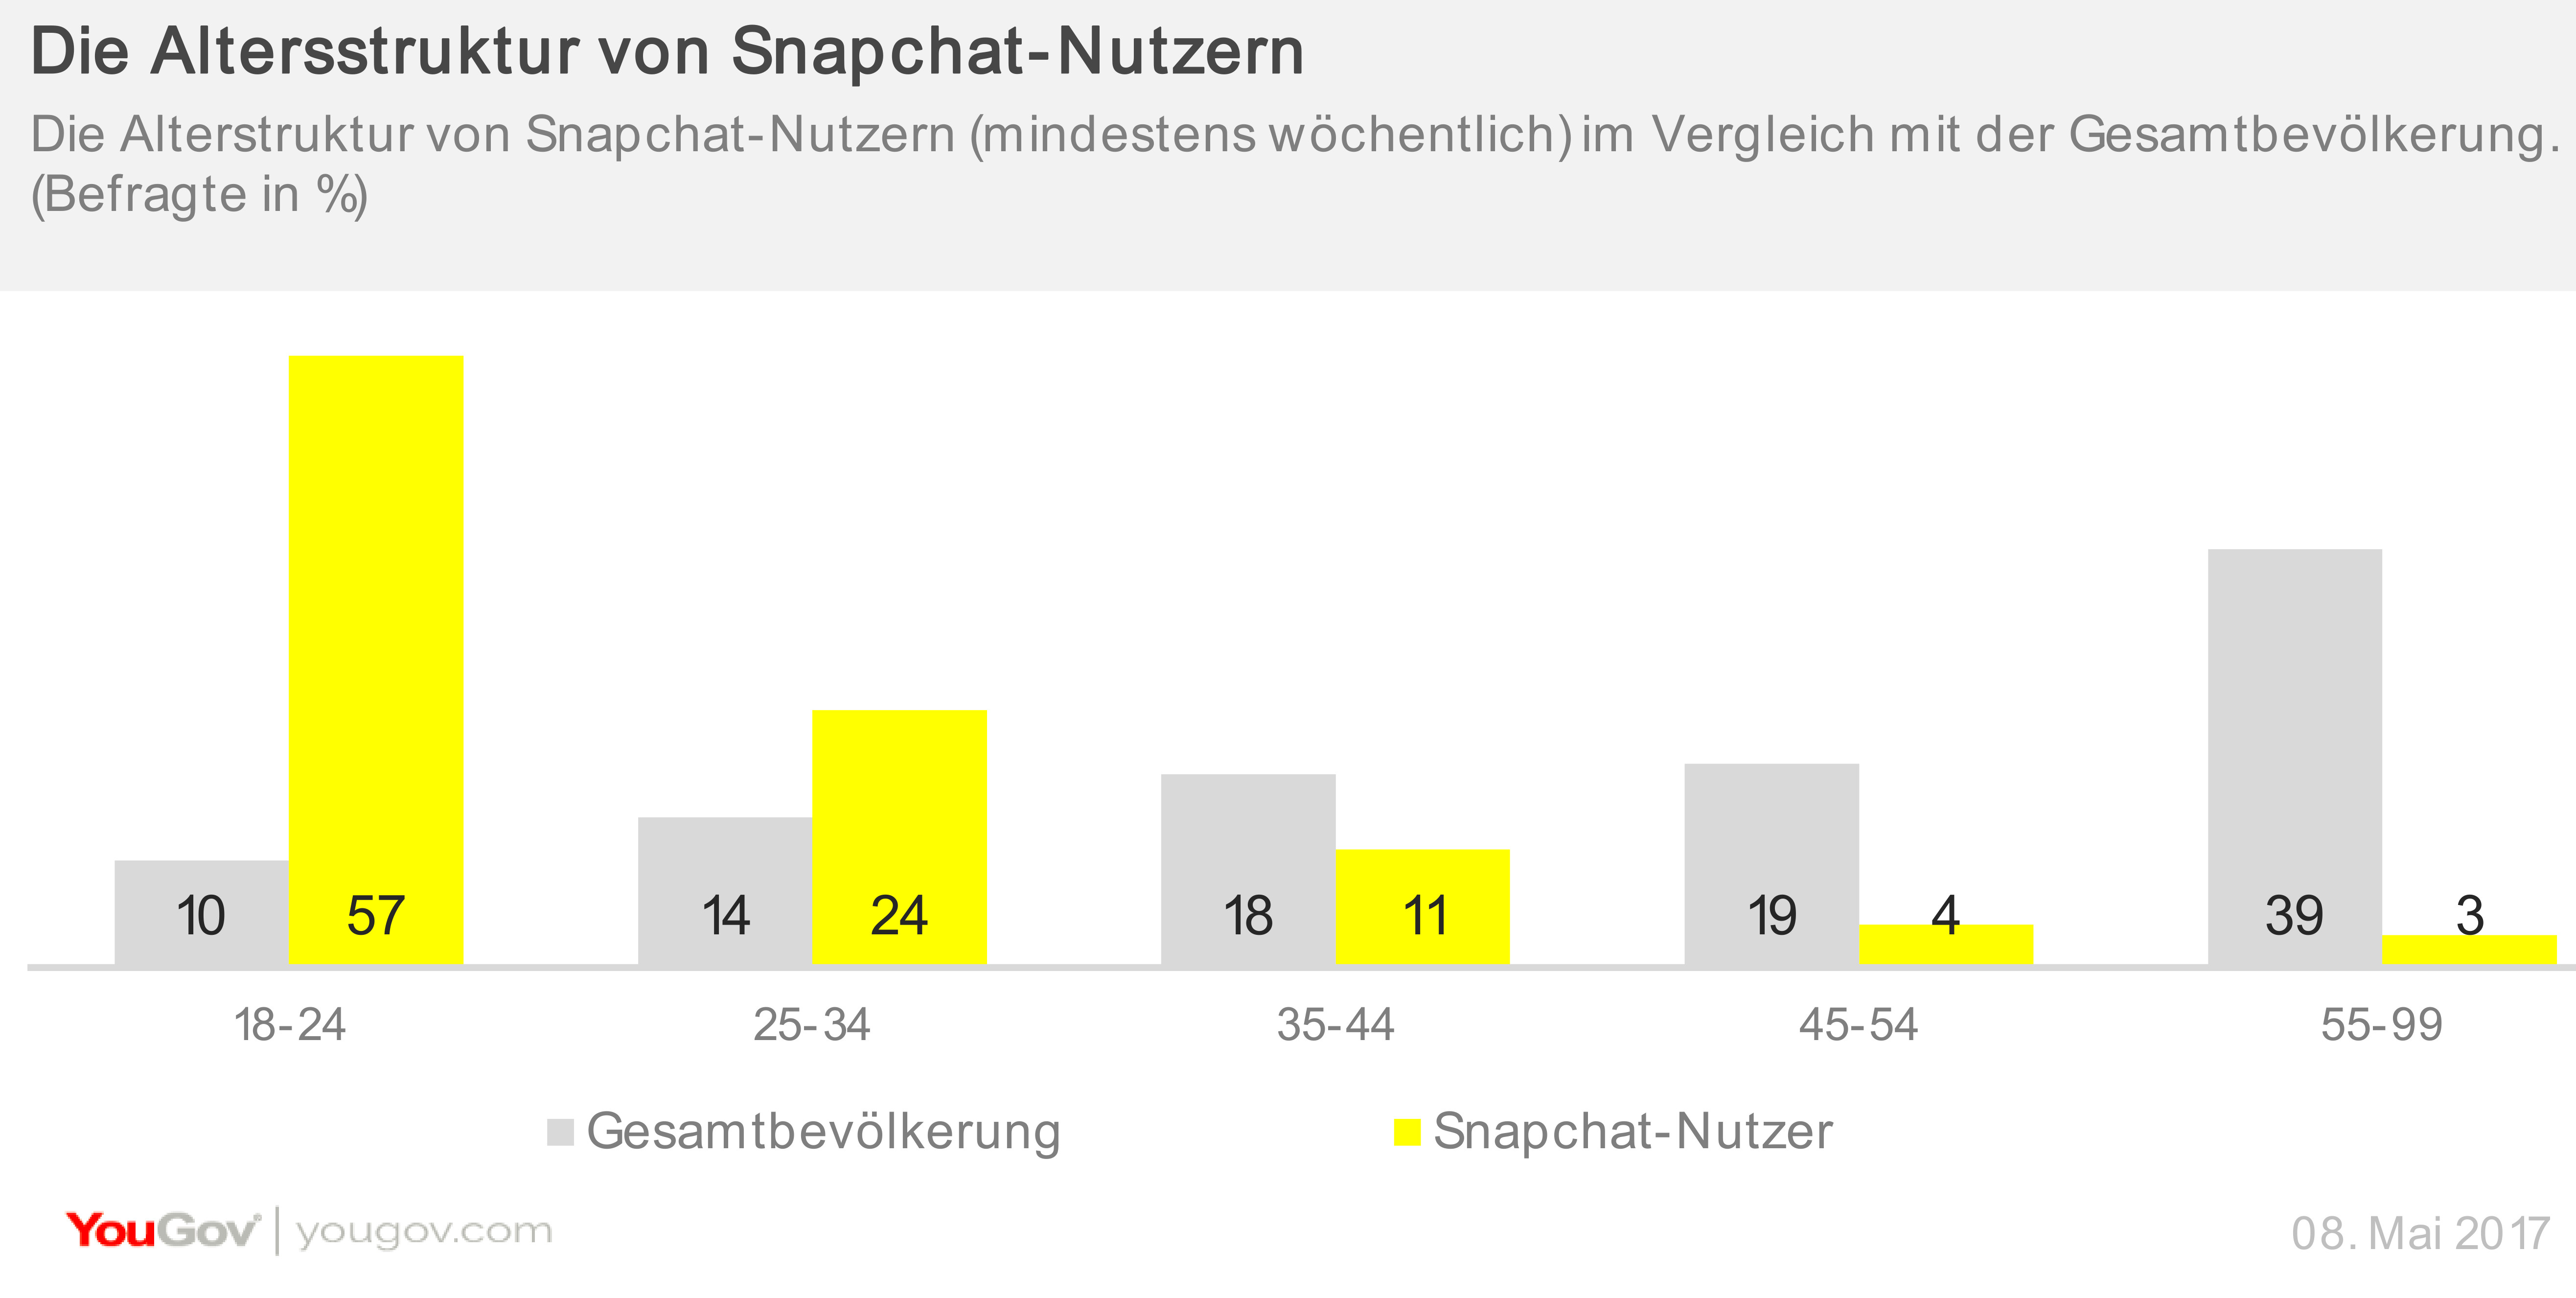 Altersstruktur von Snapchat-Nutzern